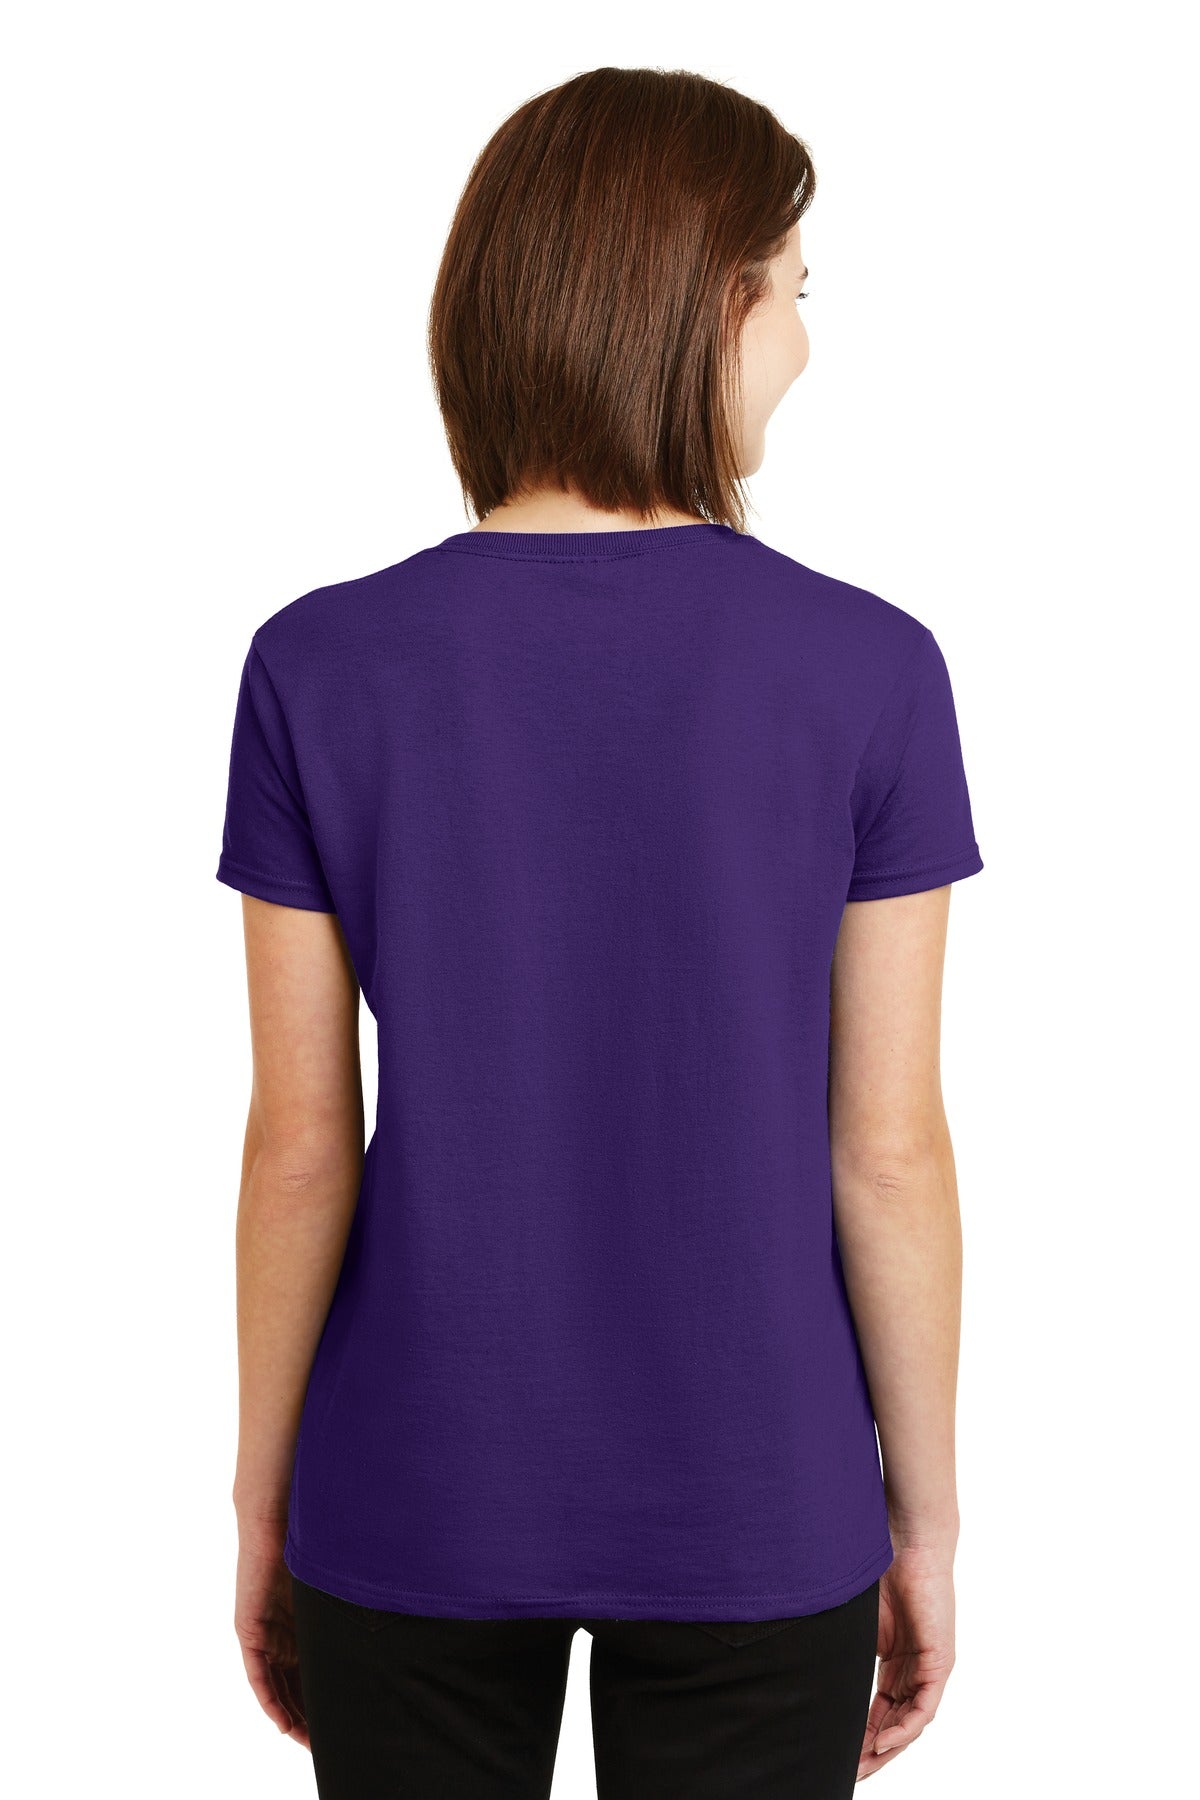 Gildan® - Ladies Ultra Cotton® 100% US Cotton T-Shirt. 2000L [Purple] - DFW Impression